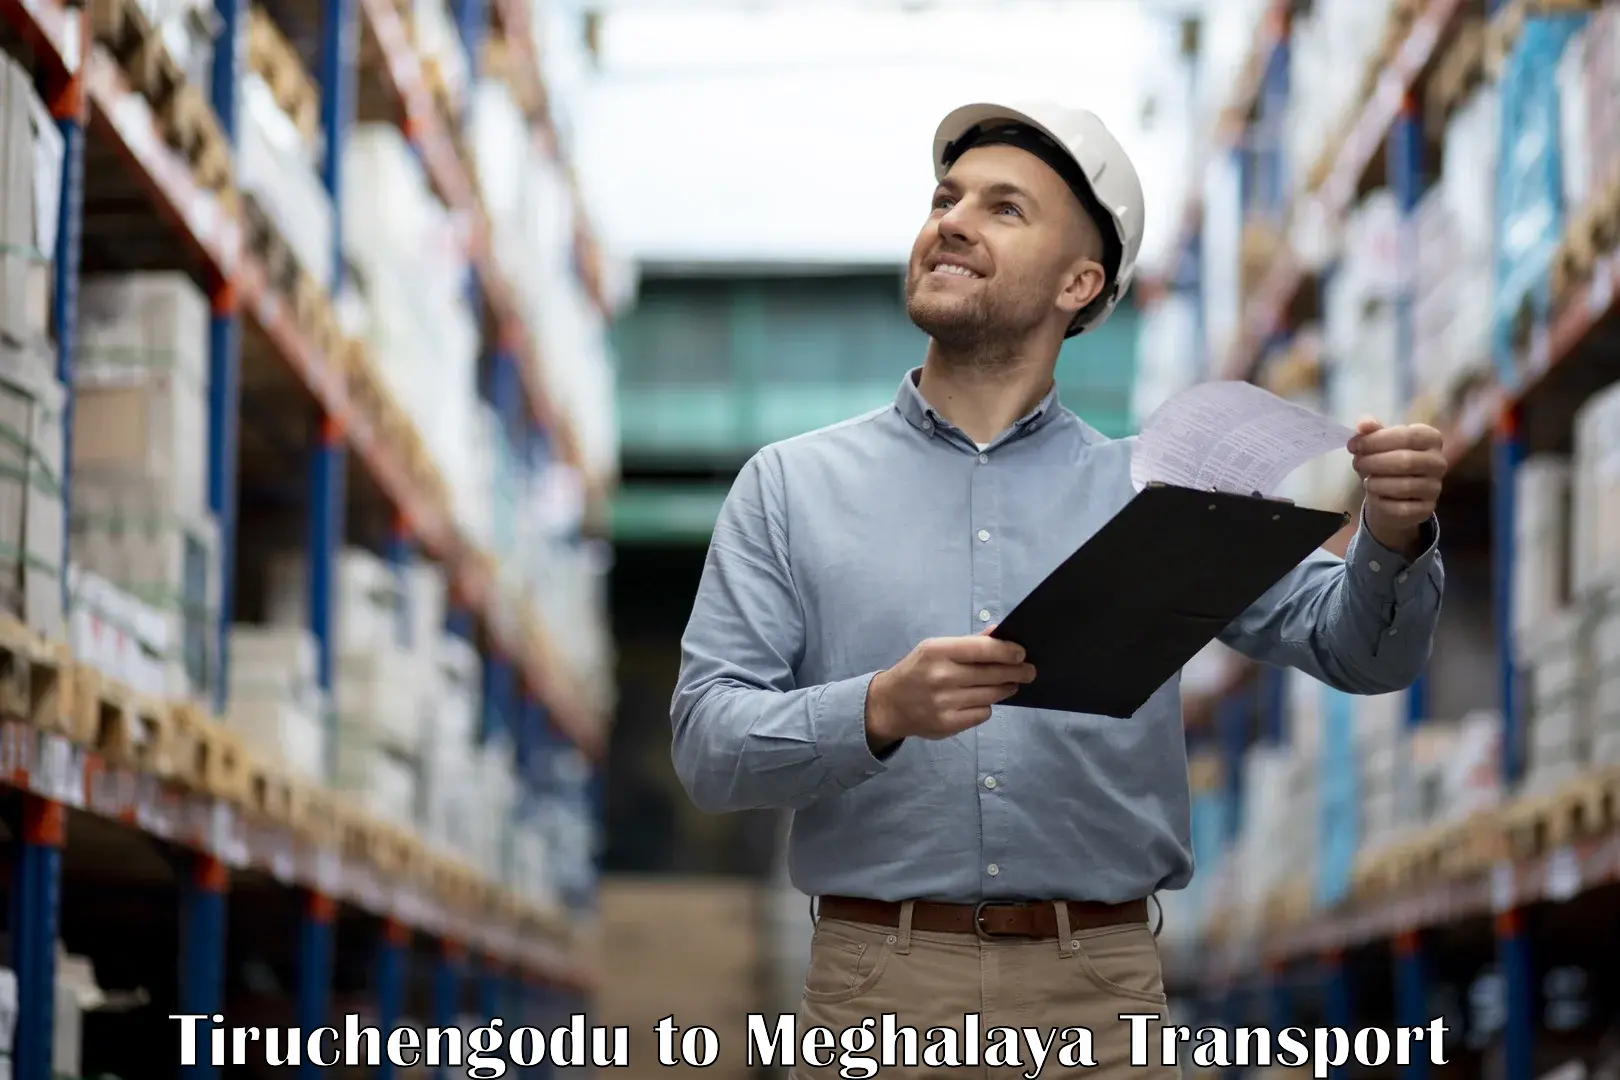 Goods delivery service Tiruchengodu to Meghalaya